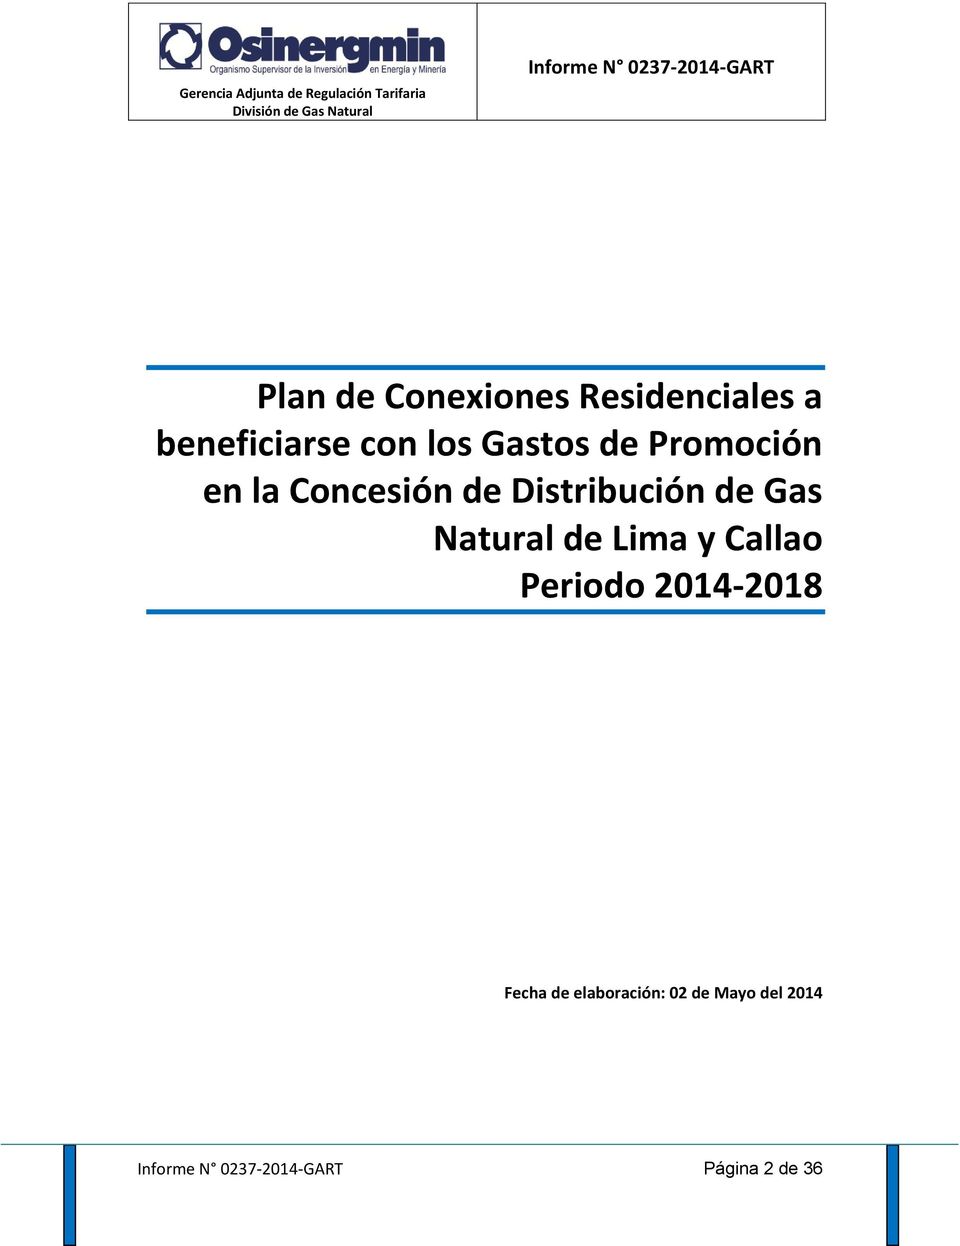 Promoción en la Concesión de Distribución de Gas Natural de Lima y Callao Periodo